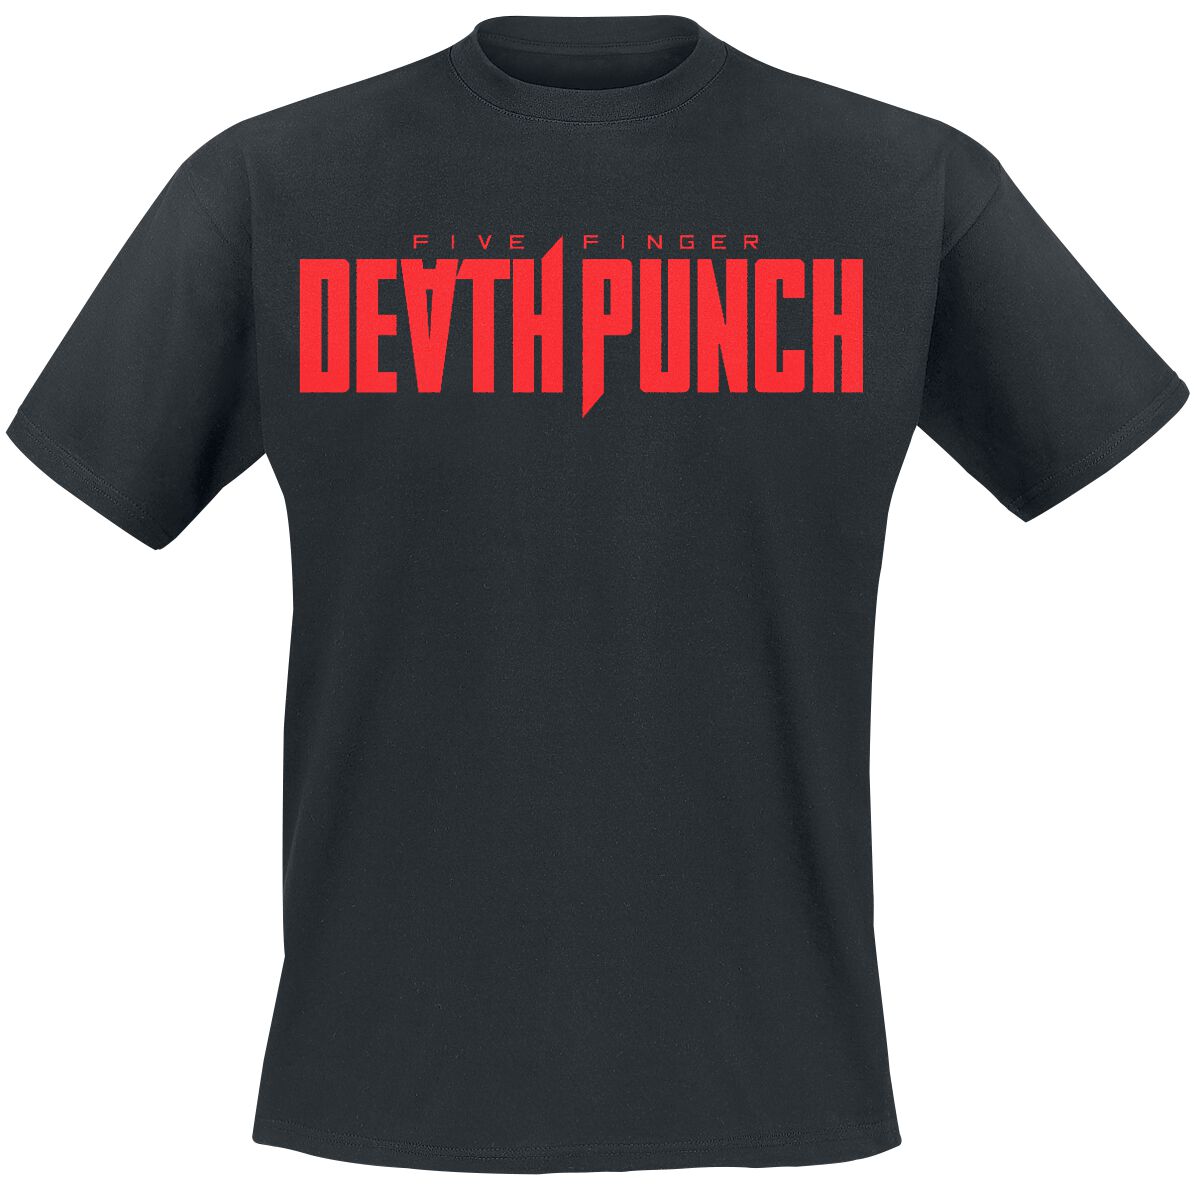 Five Finger Death Punch T-Shirt - Afterlife Kanji - S bis 3XL - für Männer - Größe 3XL - schwarz  - Lizenziertes Merchandise!